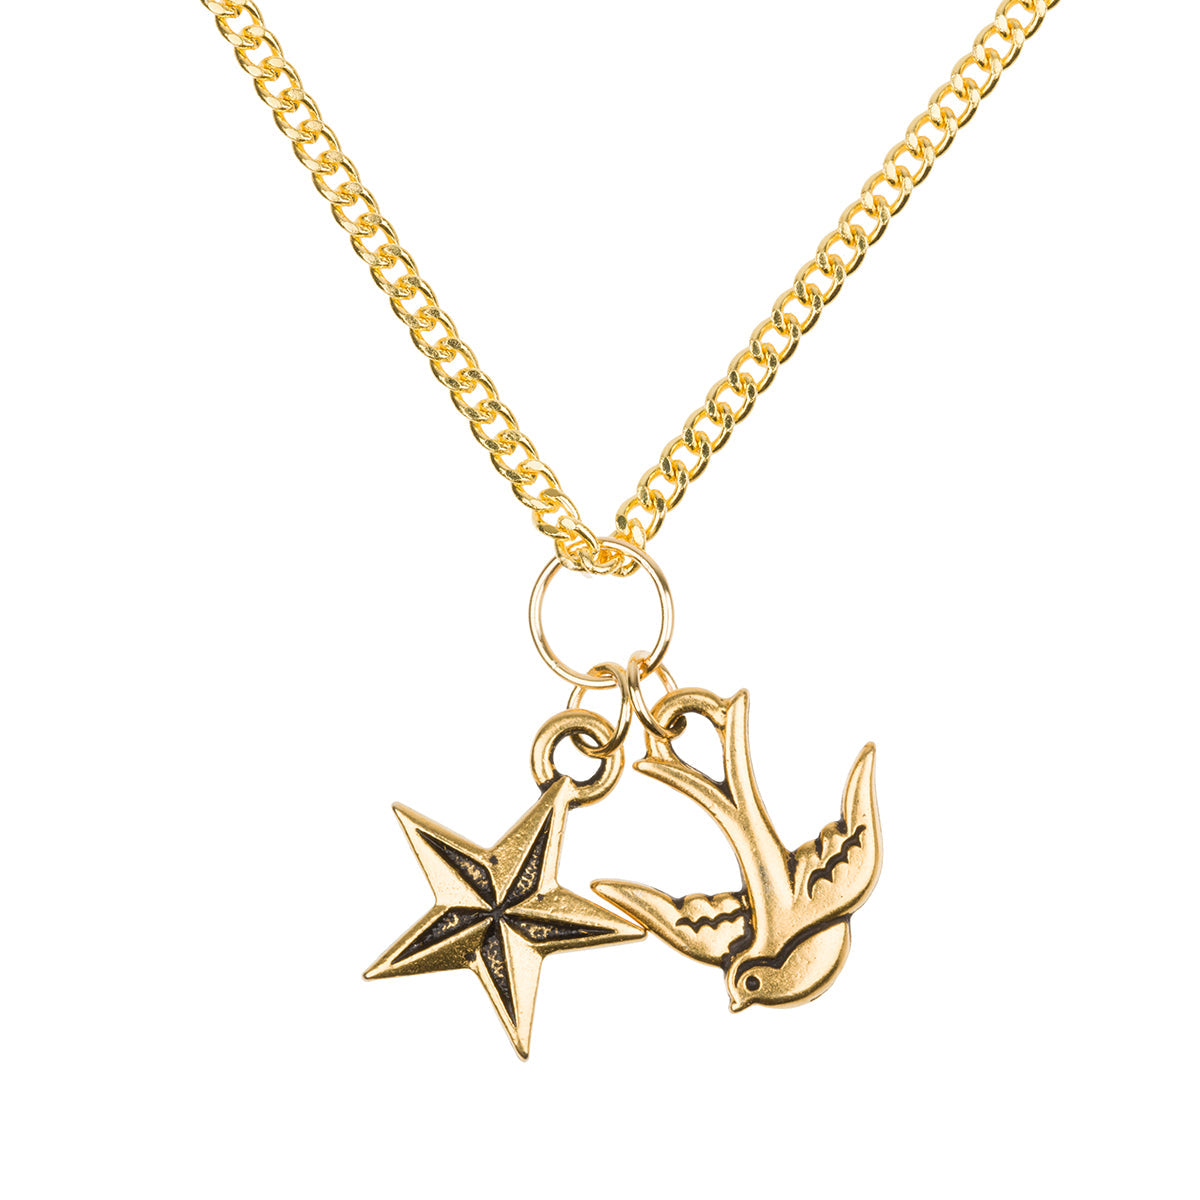 Gold Nautical Necklace Dollydagger Sailorette